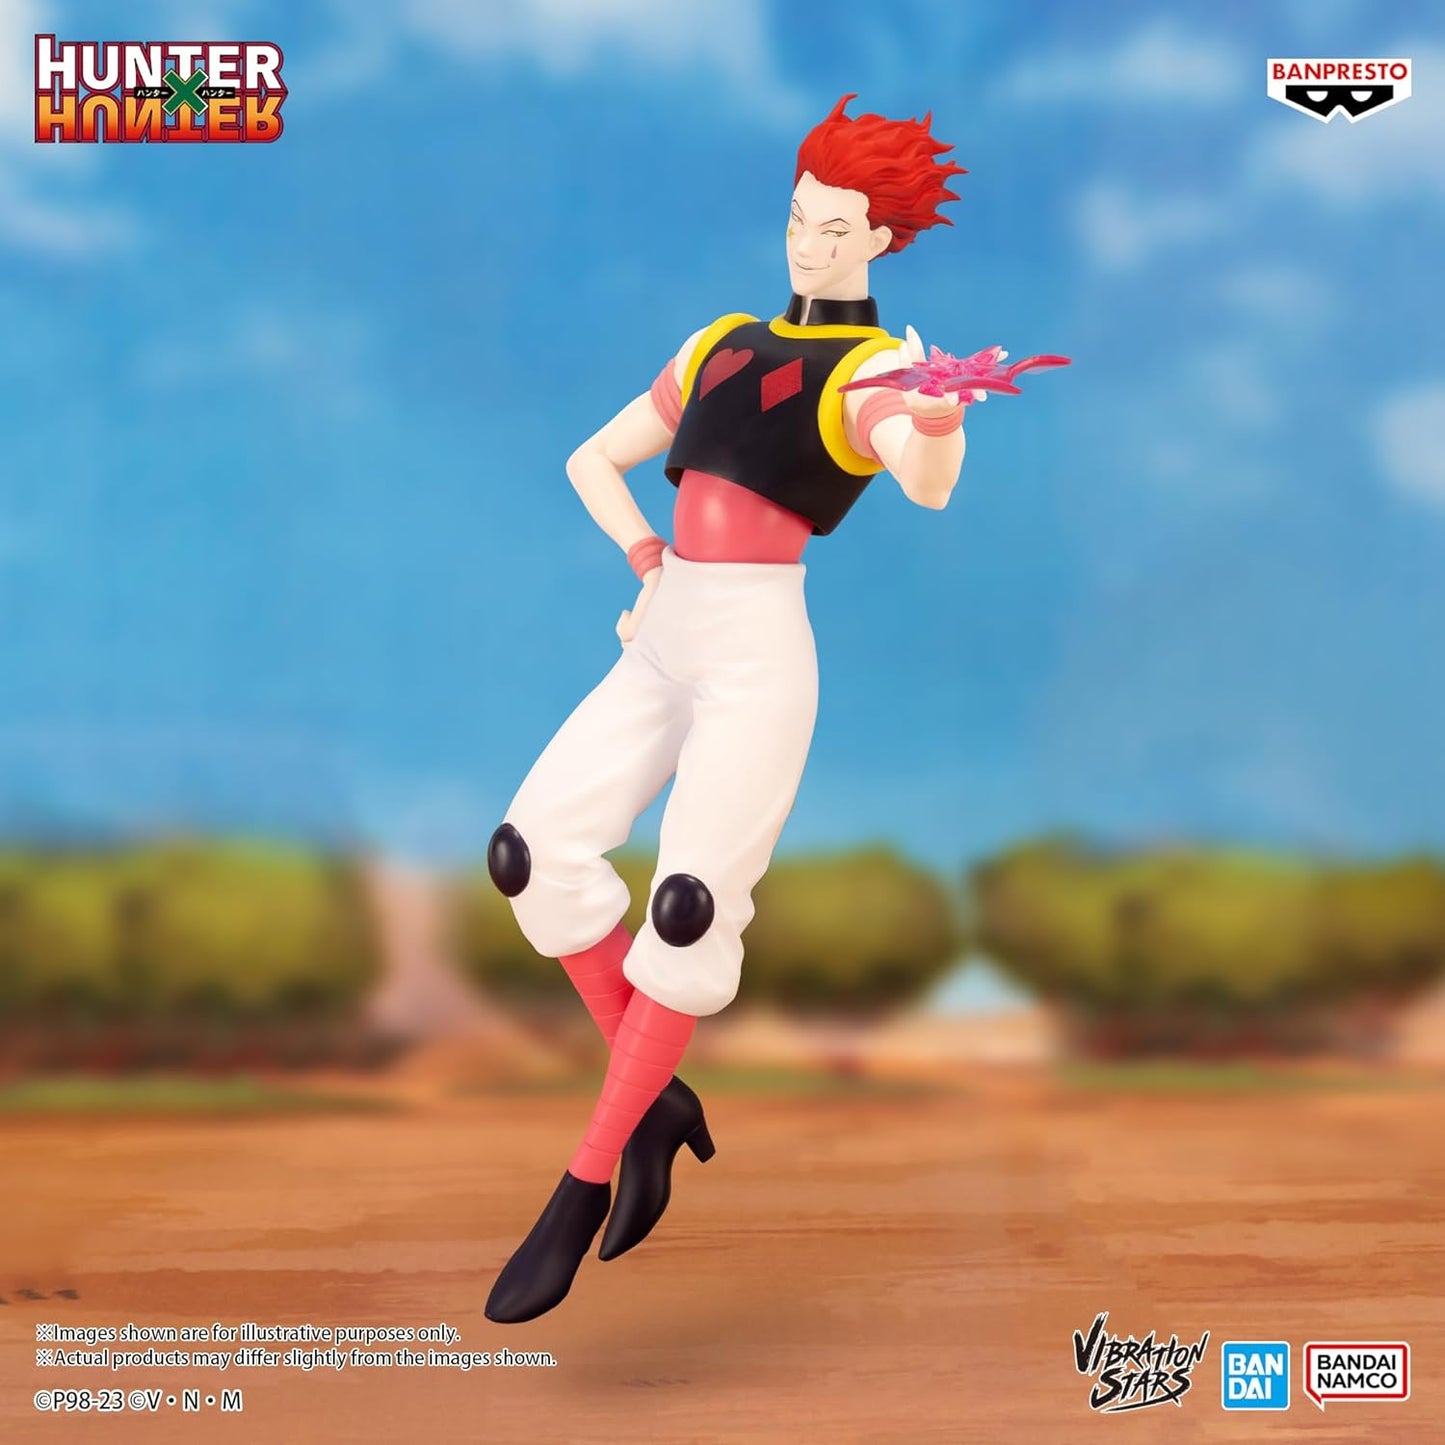 Banpresto - Hunter x Hunter - Hyskoa, Bandai Spirits Vibration Stars Figure